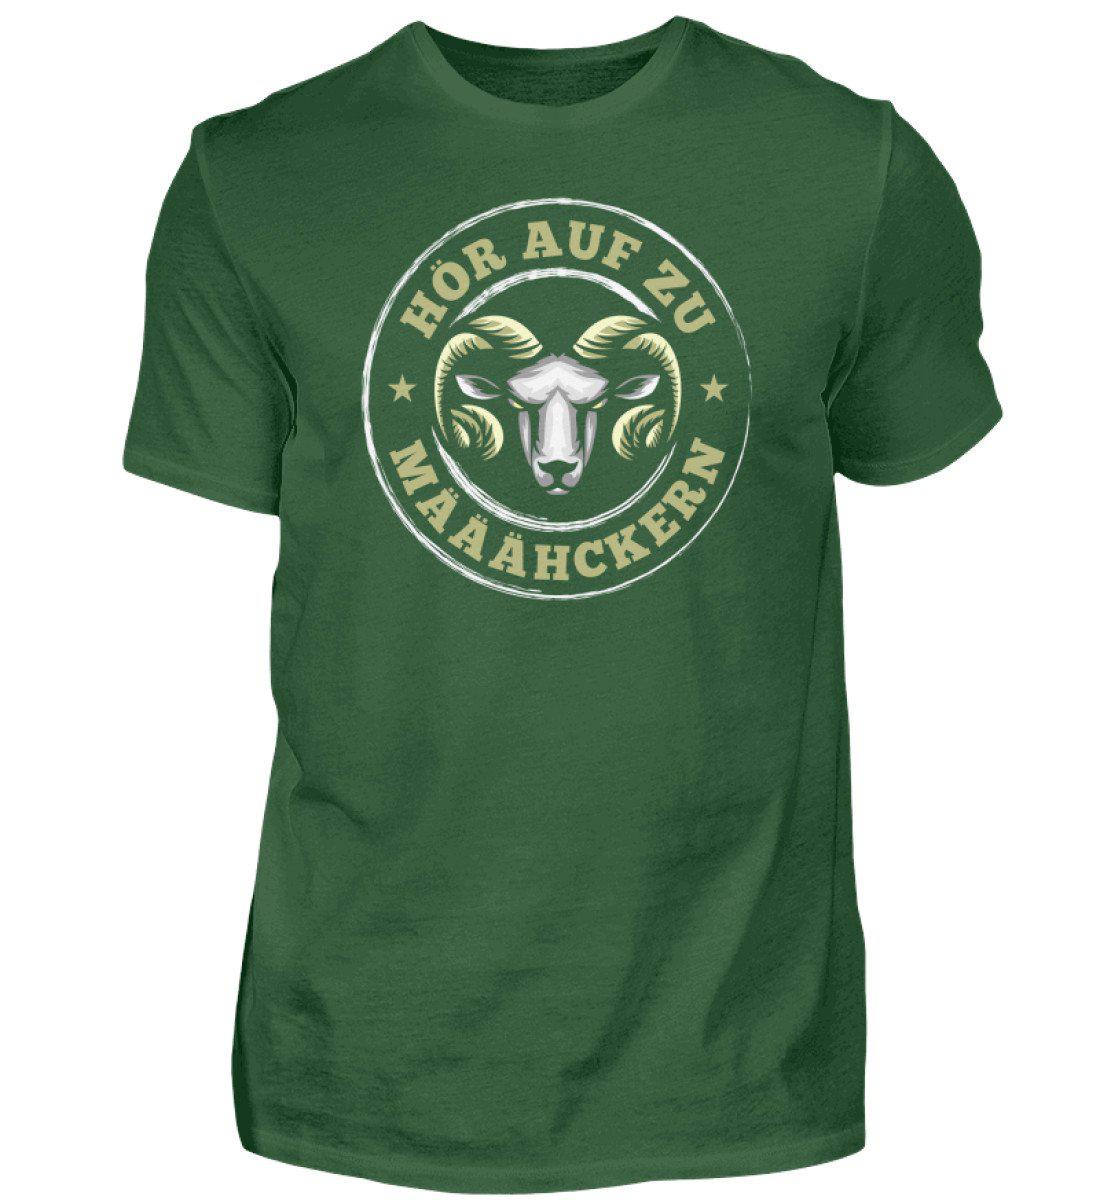 Hör auf zu määähckern · Herren T-Shirt-Herren Basic T-Shirt-Bottle Green-S-Agrarstarz